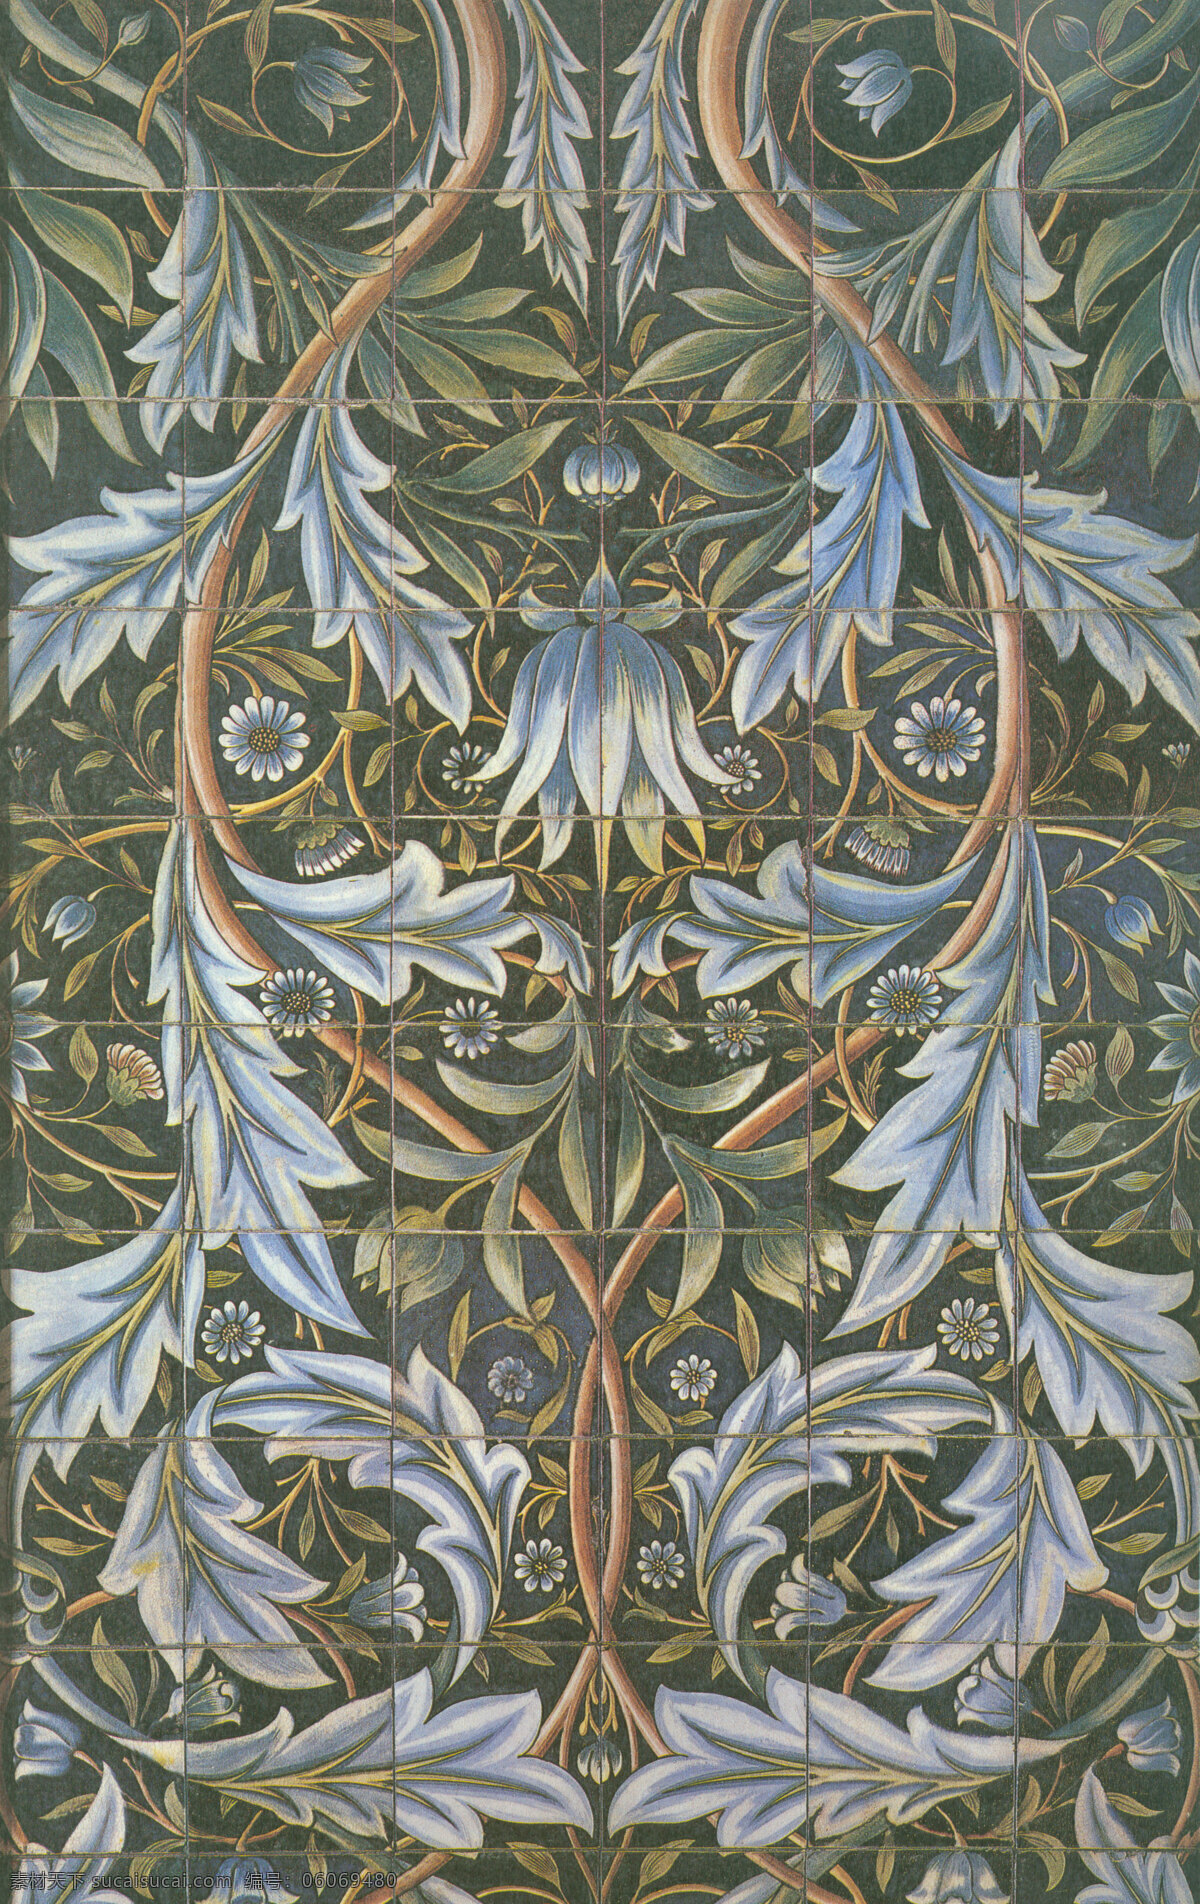 威廉 莫里斯 时期 纹样 装饰纹样 威廉莫里斯 卷草 动植物 设计素材 底纹边框 花边花纹